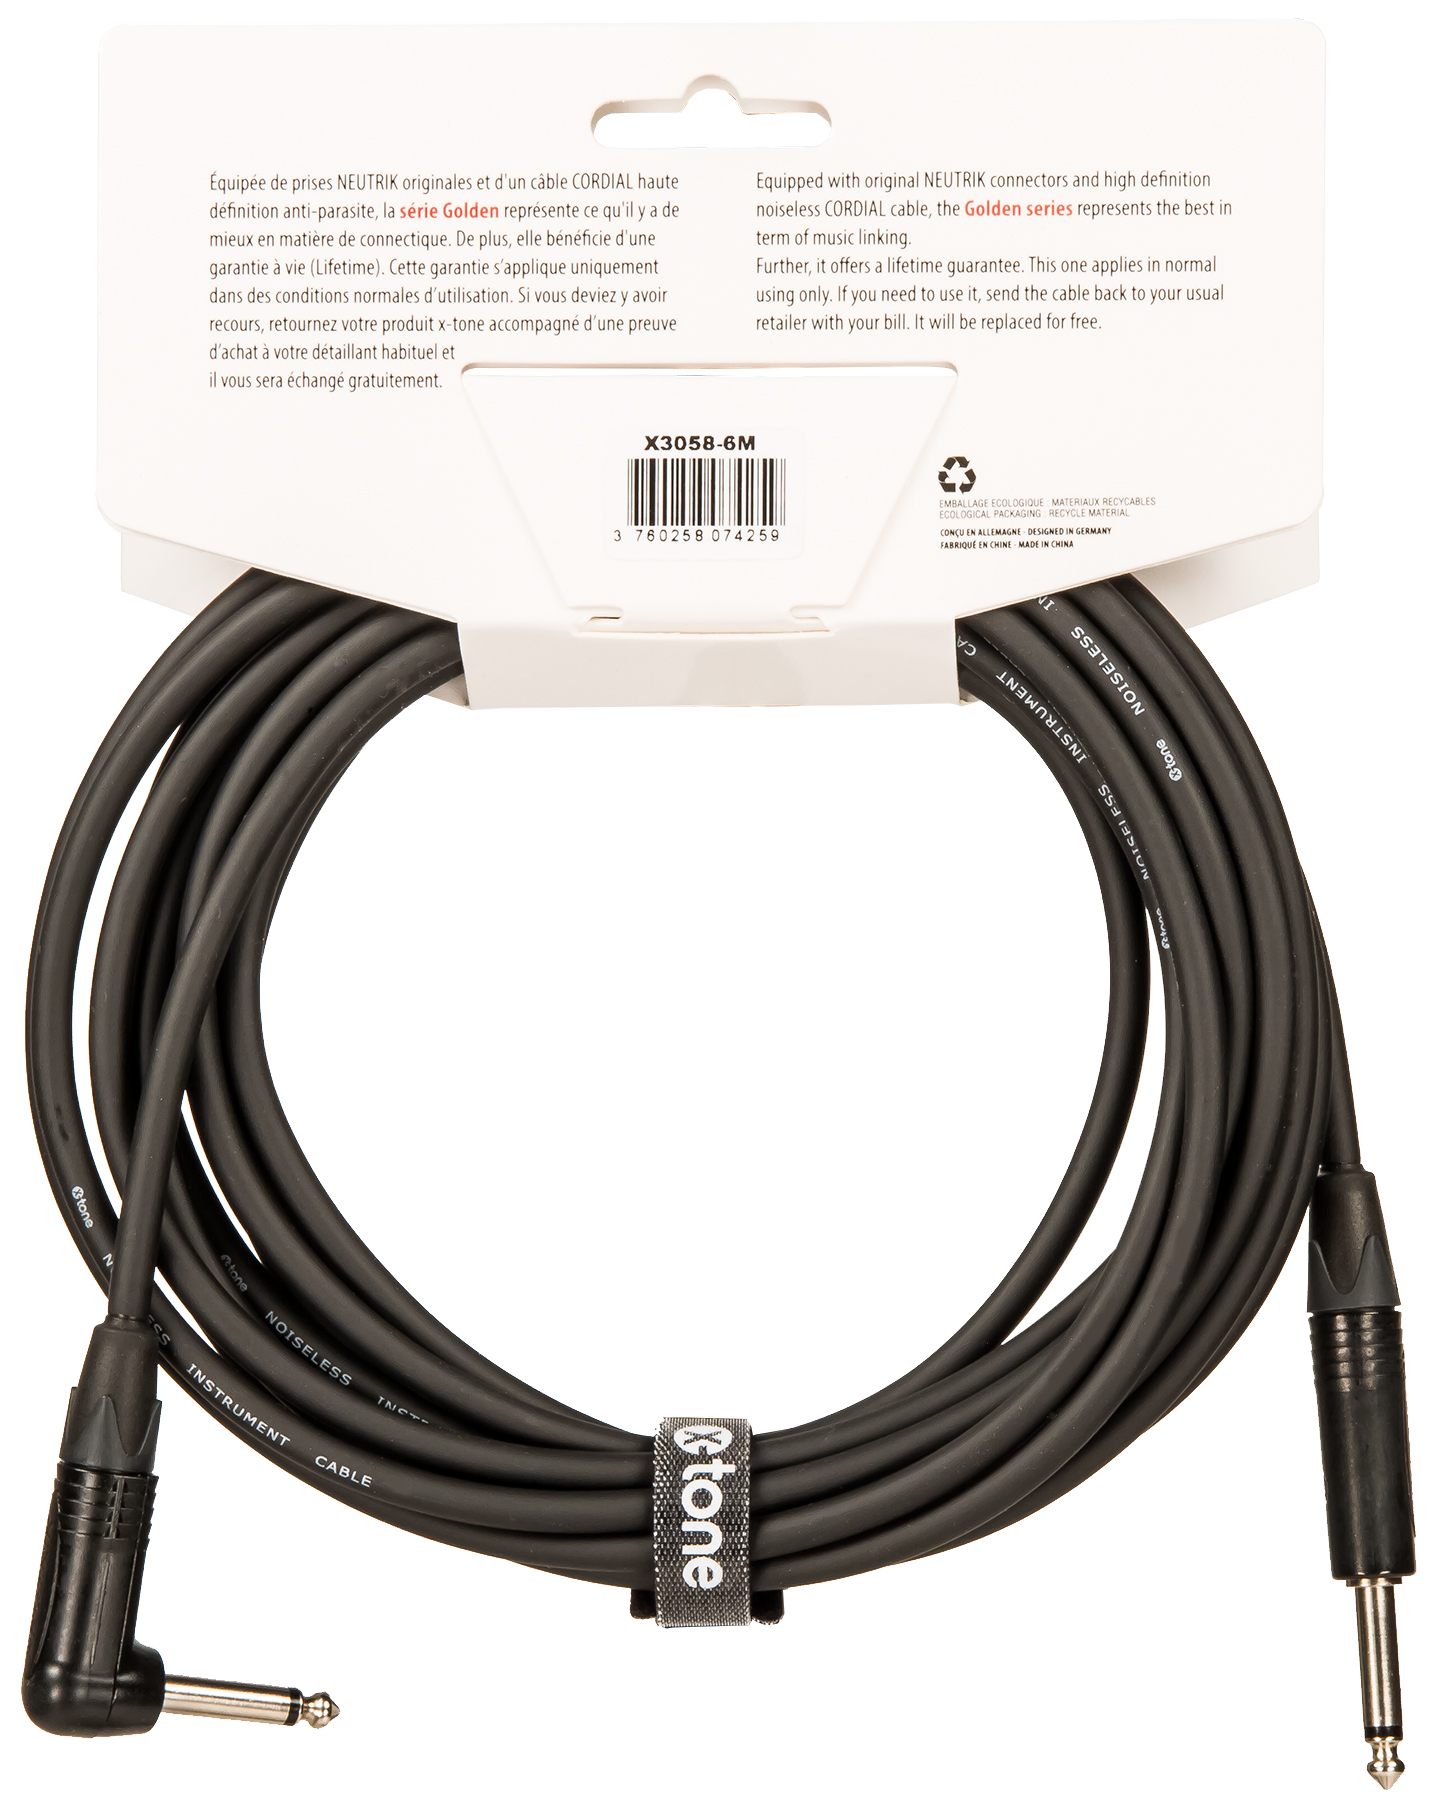 X-tone X3058-6m Instrument Cable Golden Series Neutrik Droit/coude 6m - Cable - Variation 2